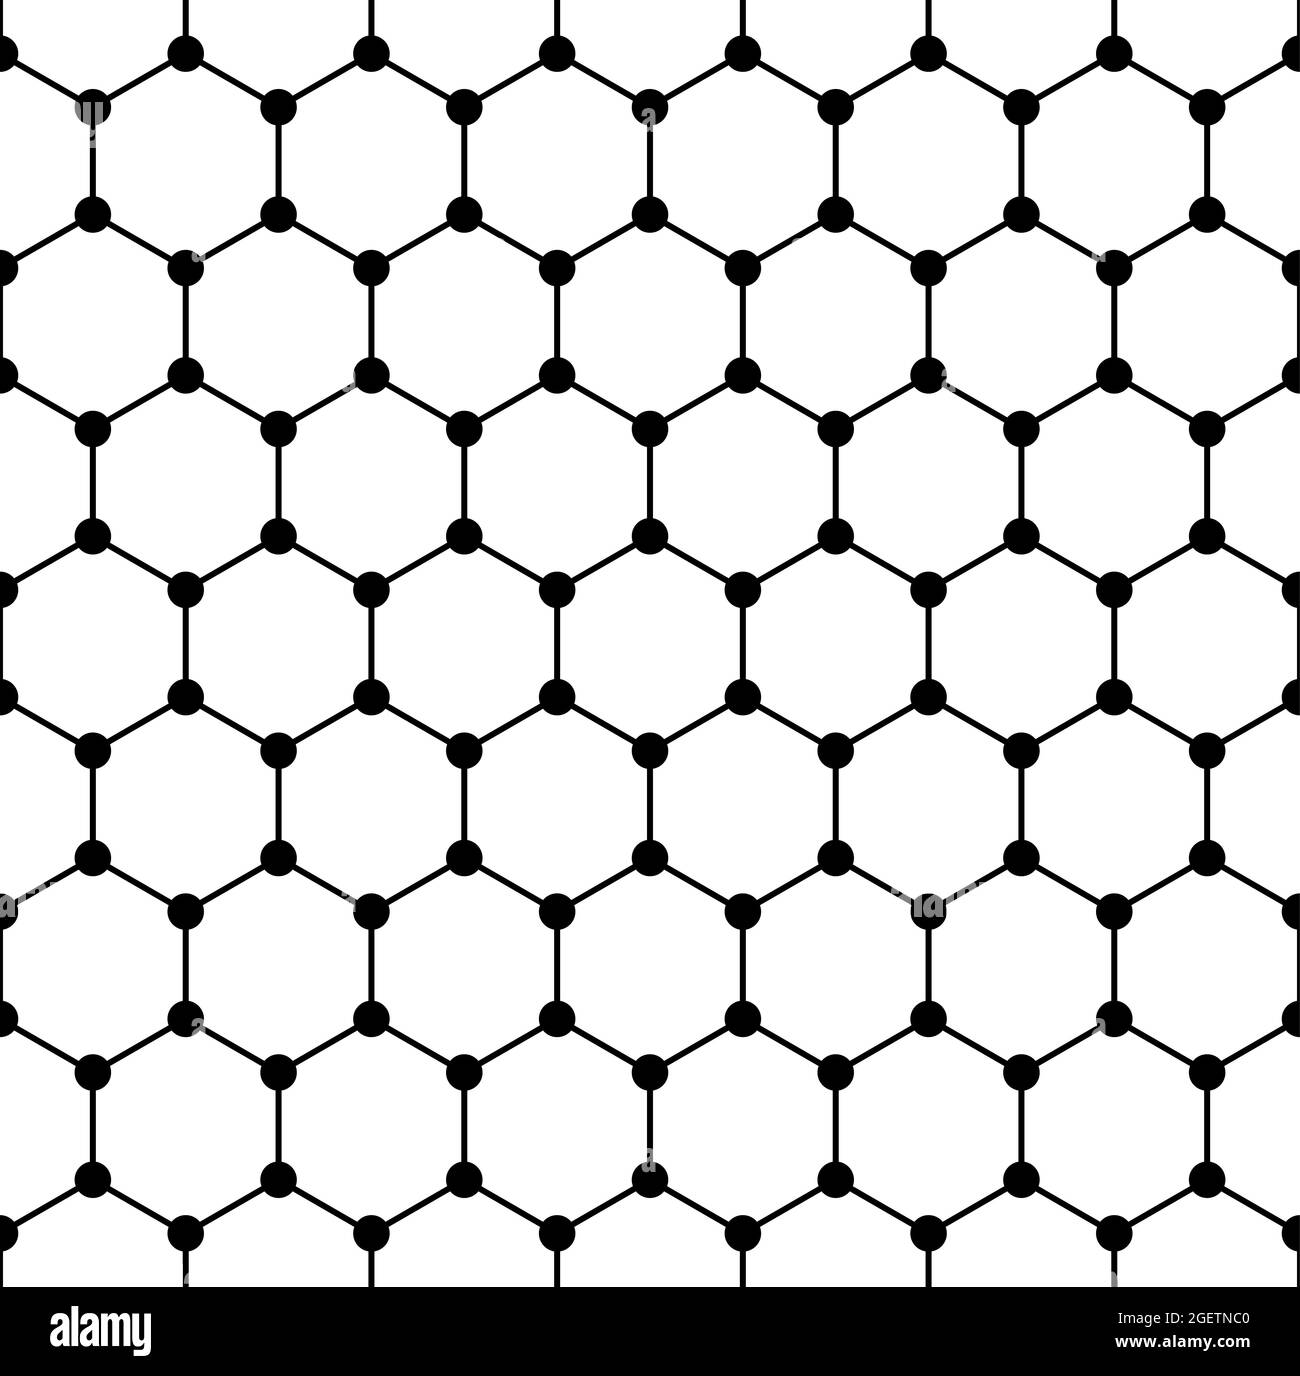 Structure du graphène, tuile sans couture, structure moléculaire schématique du graphène, allocorde de carbone, une seule couche d'atomes de carbone dans une grille hexagonale. Banque D'Images